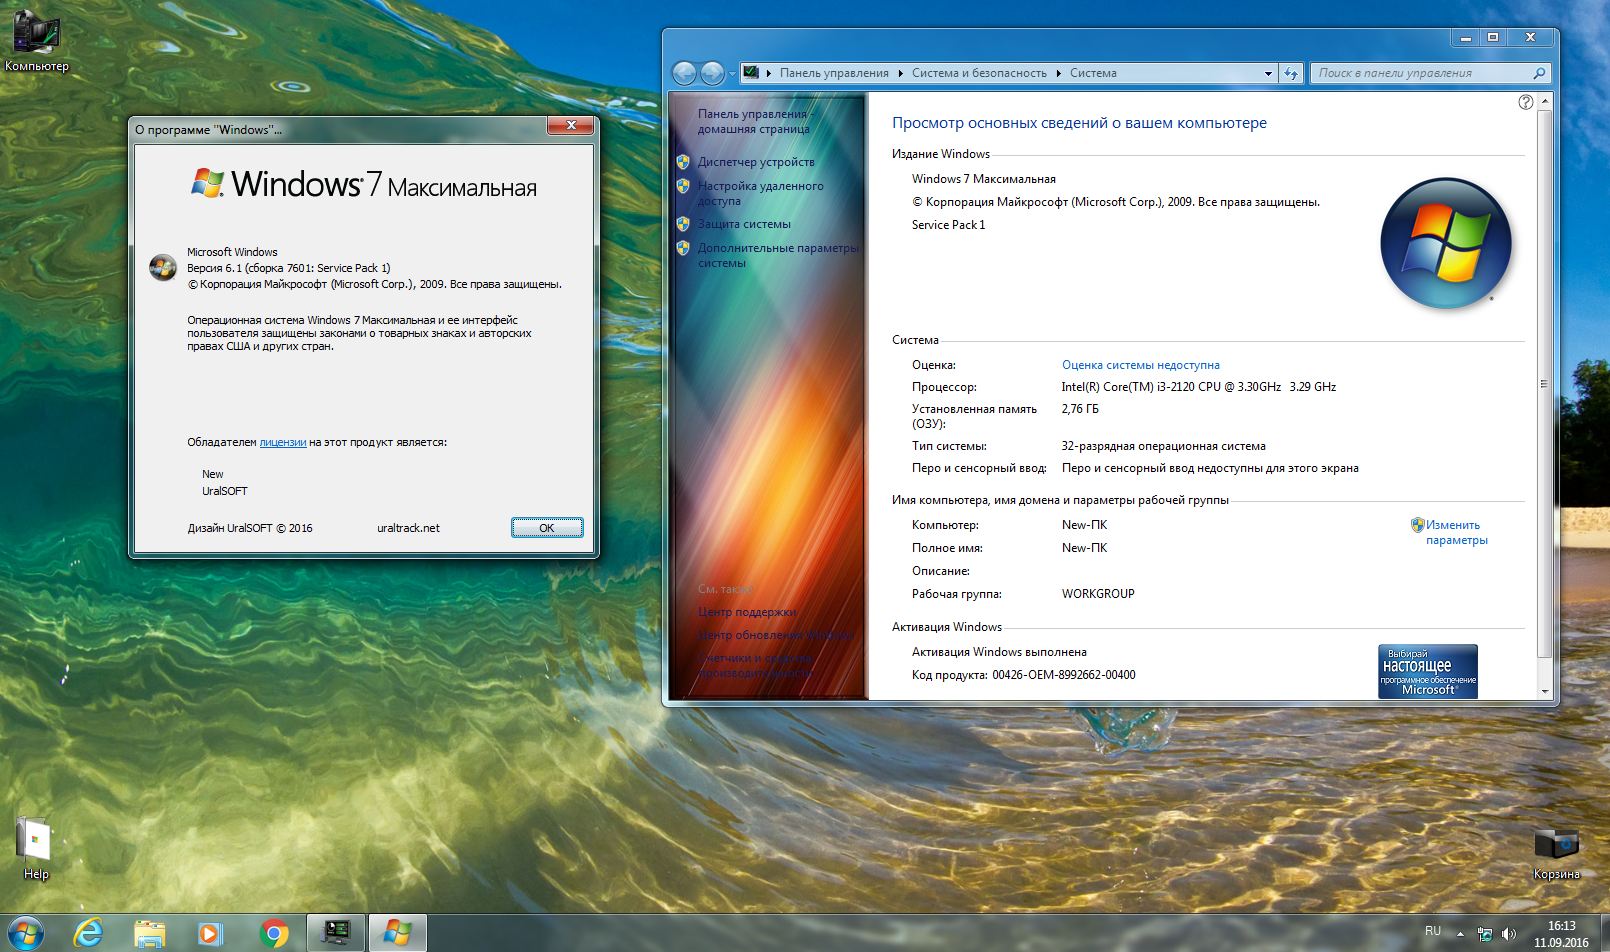 Windows 7 Ultimate &10 Enterprise LTSB x86 v.75.16 - «Windows»